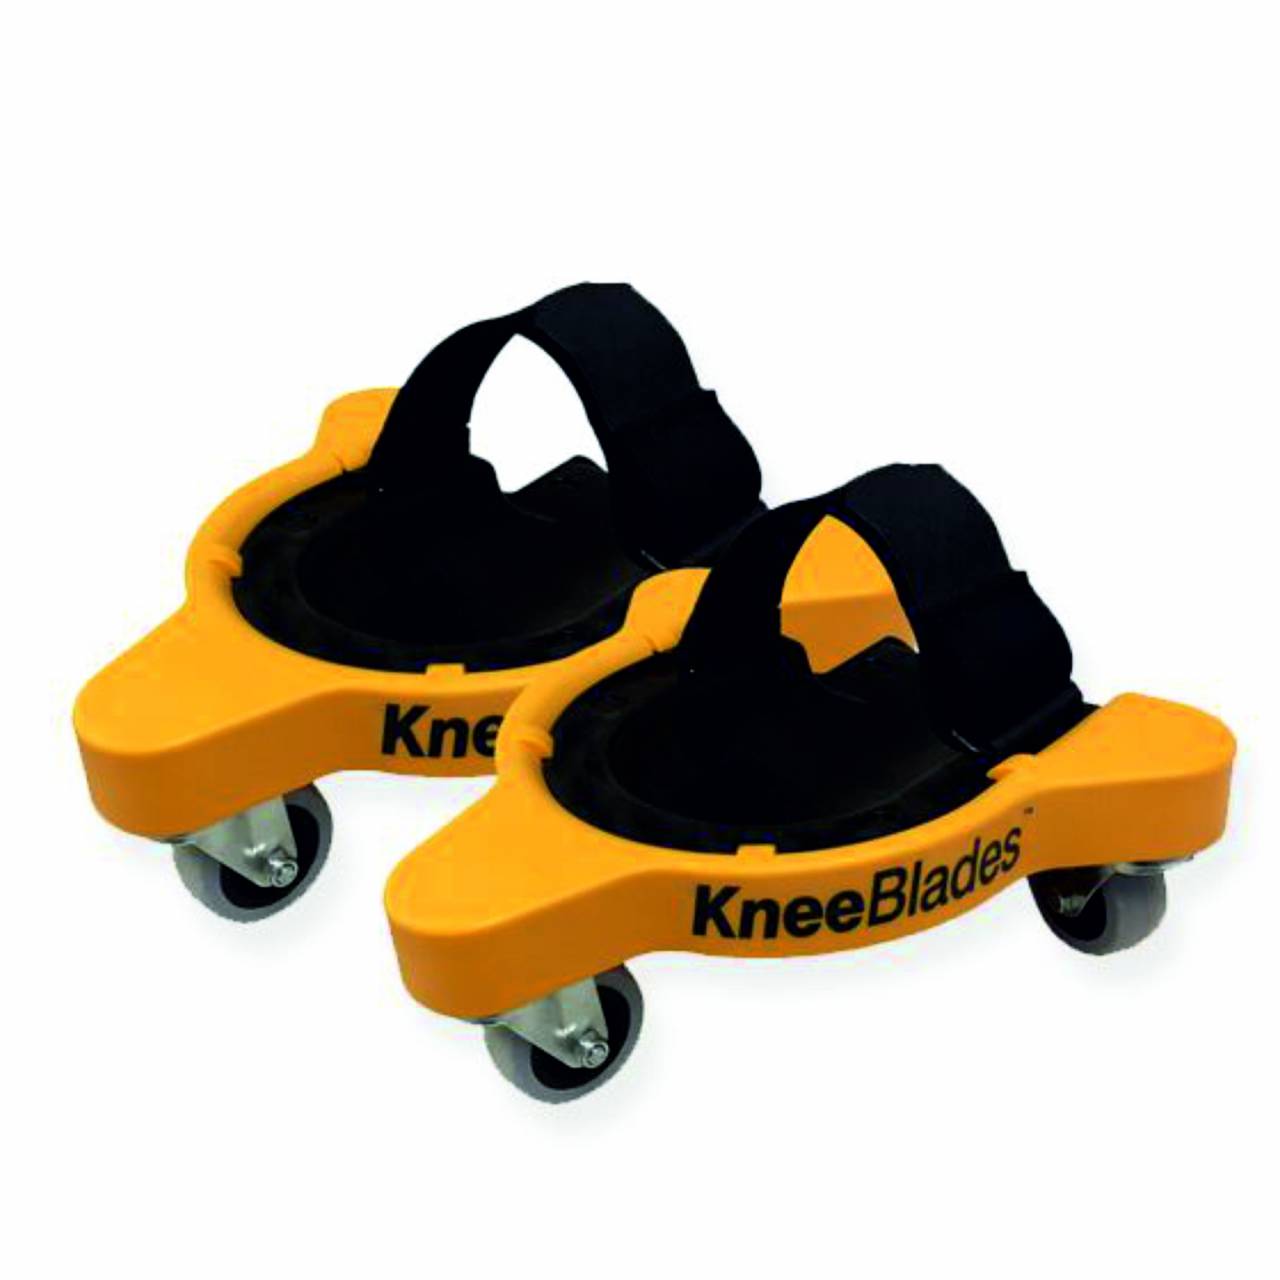 Knieschoner 'KneeBlades', mit Gel-Pads-Einlagen